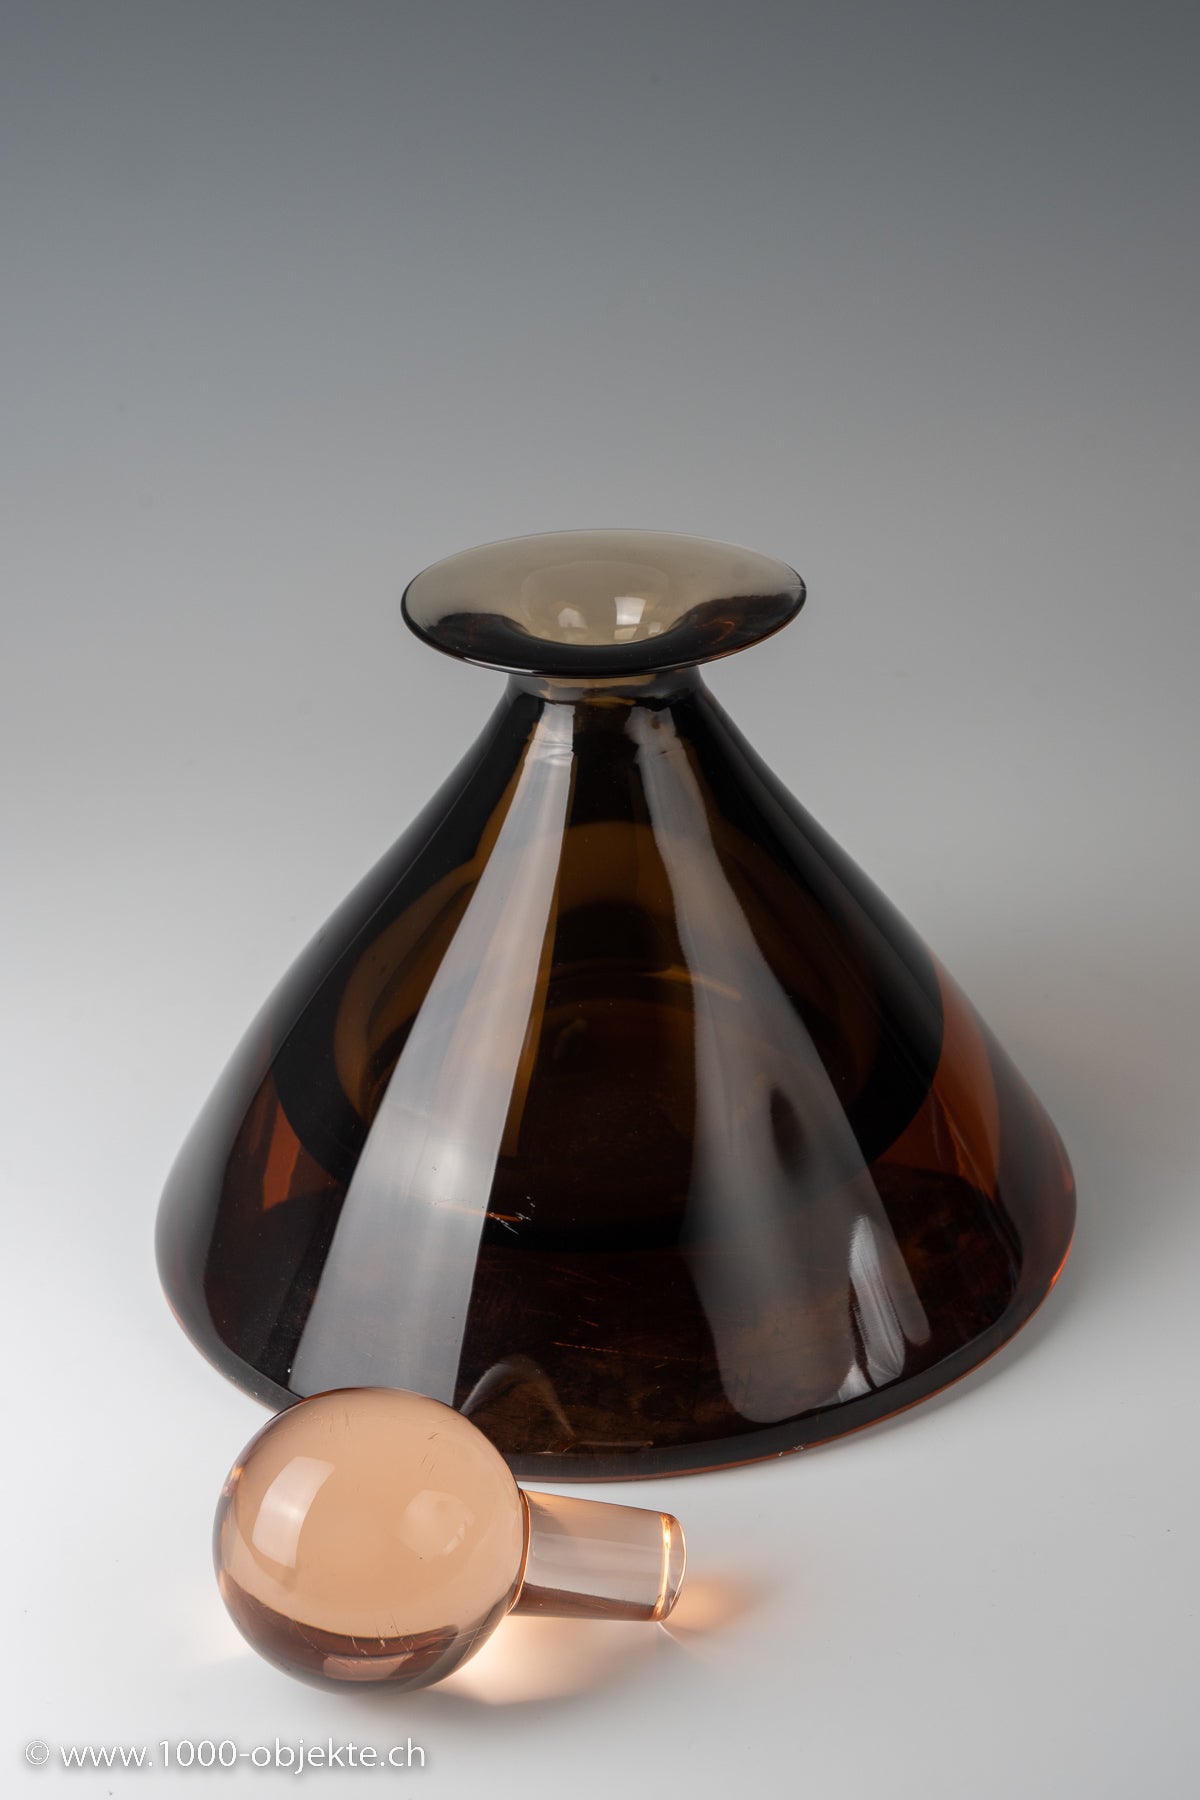 Seguso, Flavio Poli Murano Amber Glass Bottle with Stopper